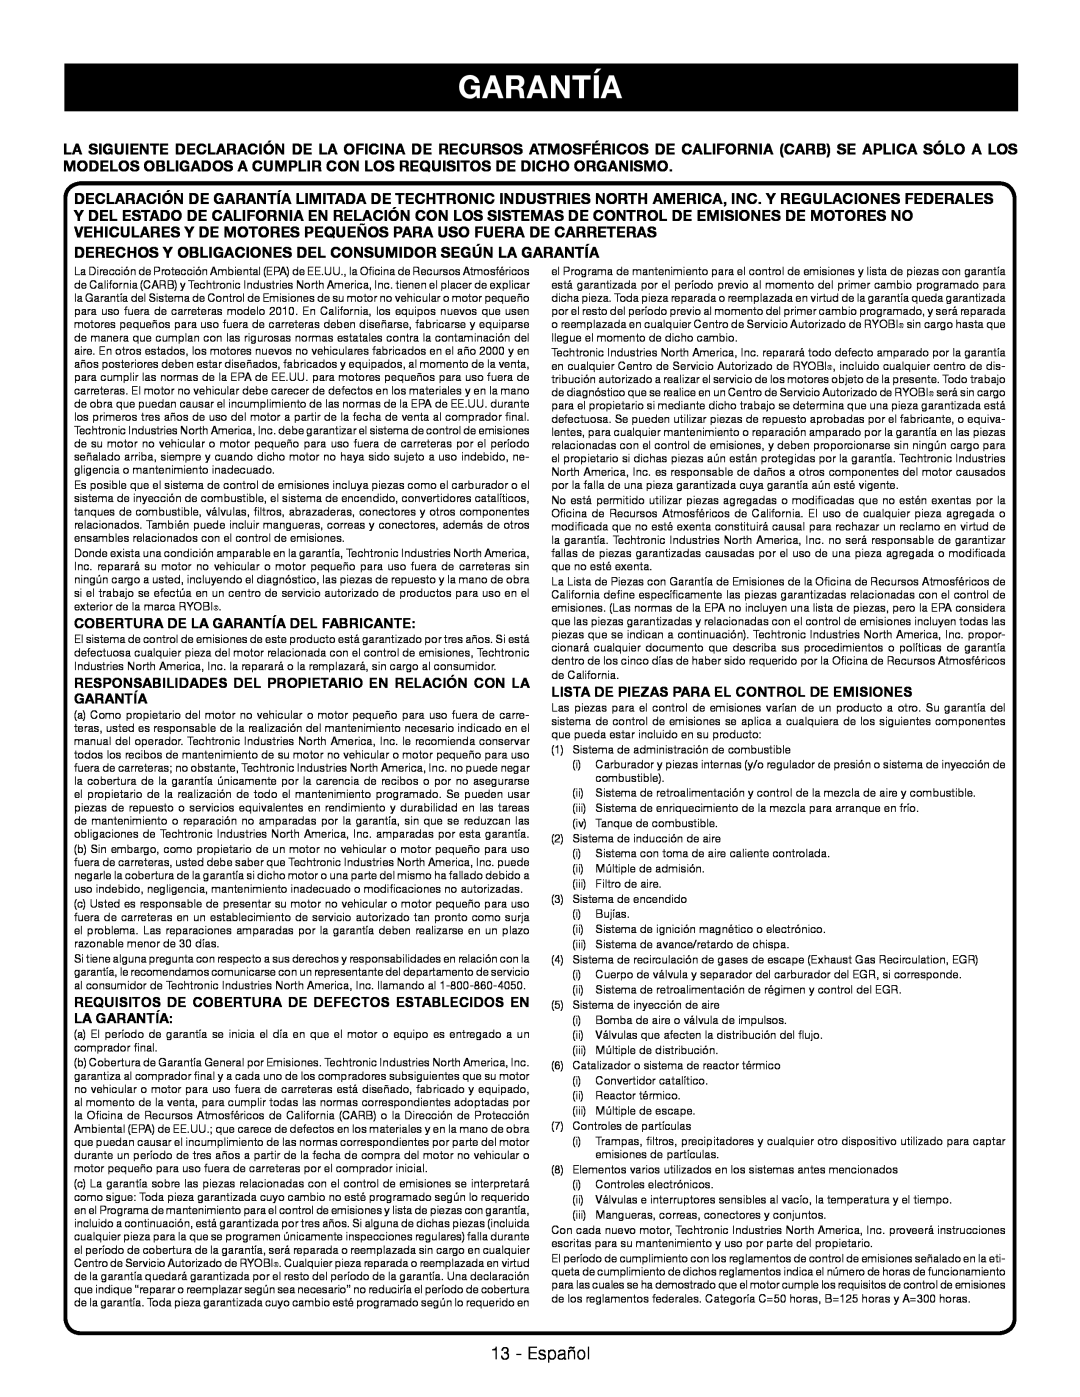 Ryobi RY09053 Español, Cobertura De La Garantía Del Fabricante, Lista De Piezas Para El Control De Emisiones 